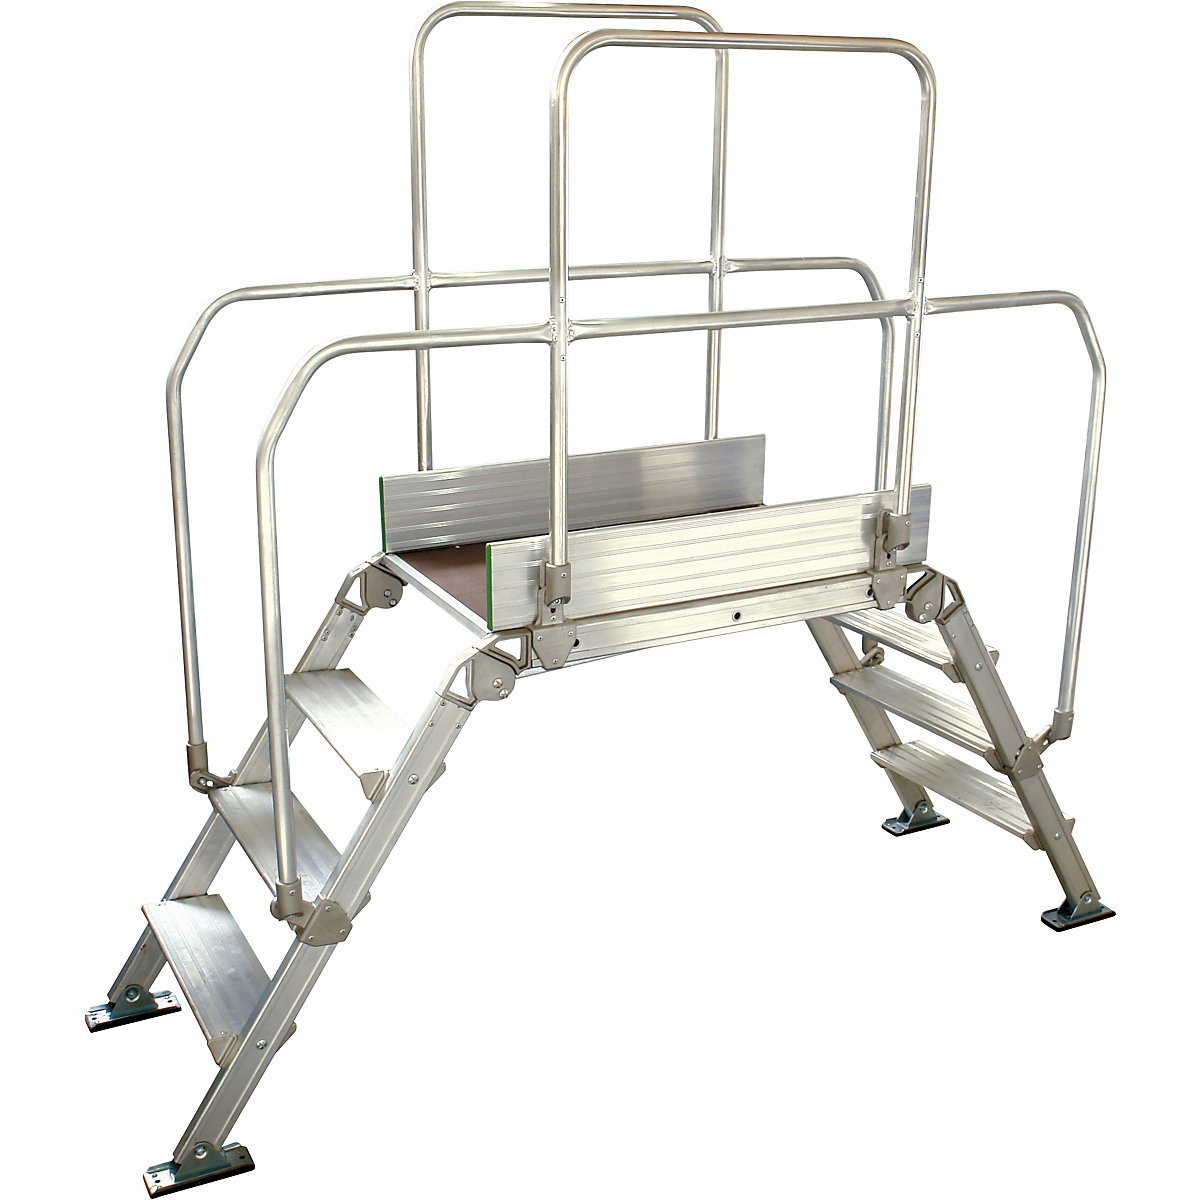 Aluminijasta premostitvena lestev, skupna obremenitev 200 kg, 4 stopnice, podest 900 x 530 mm